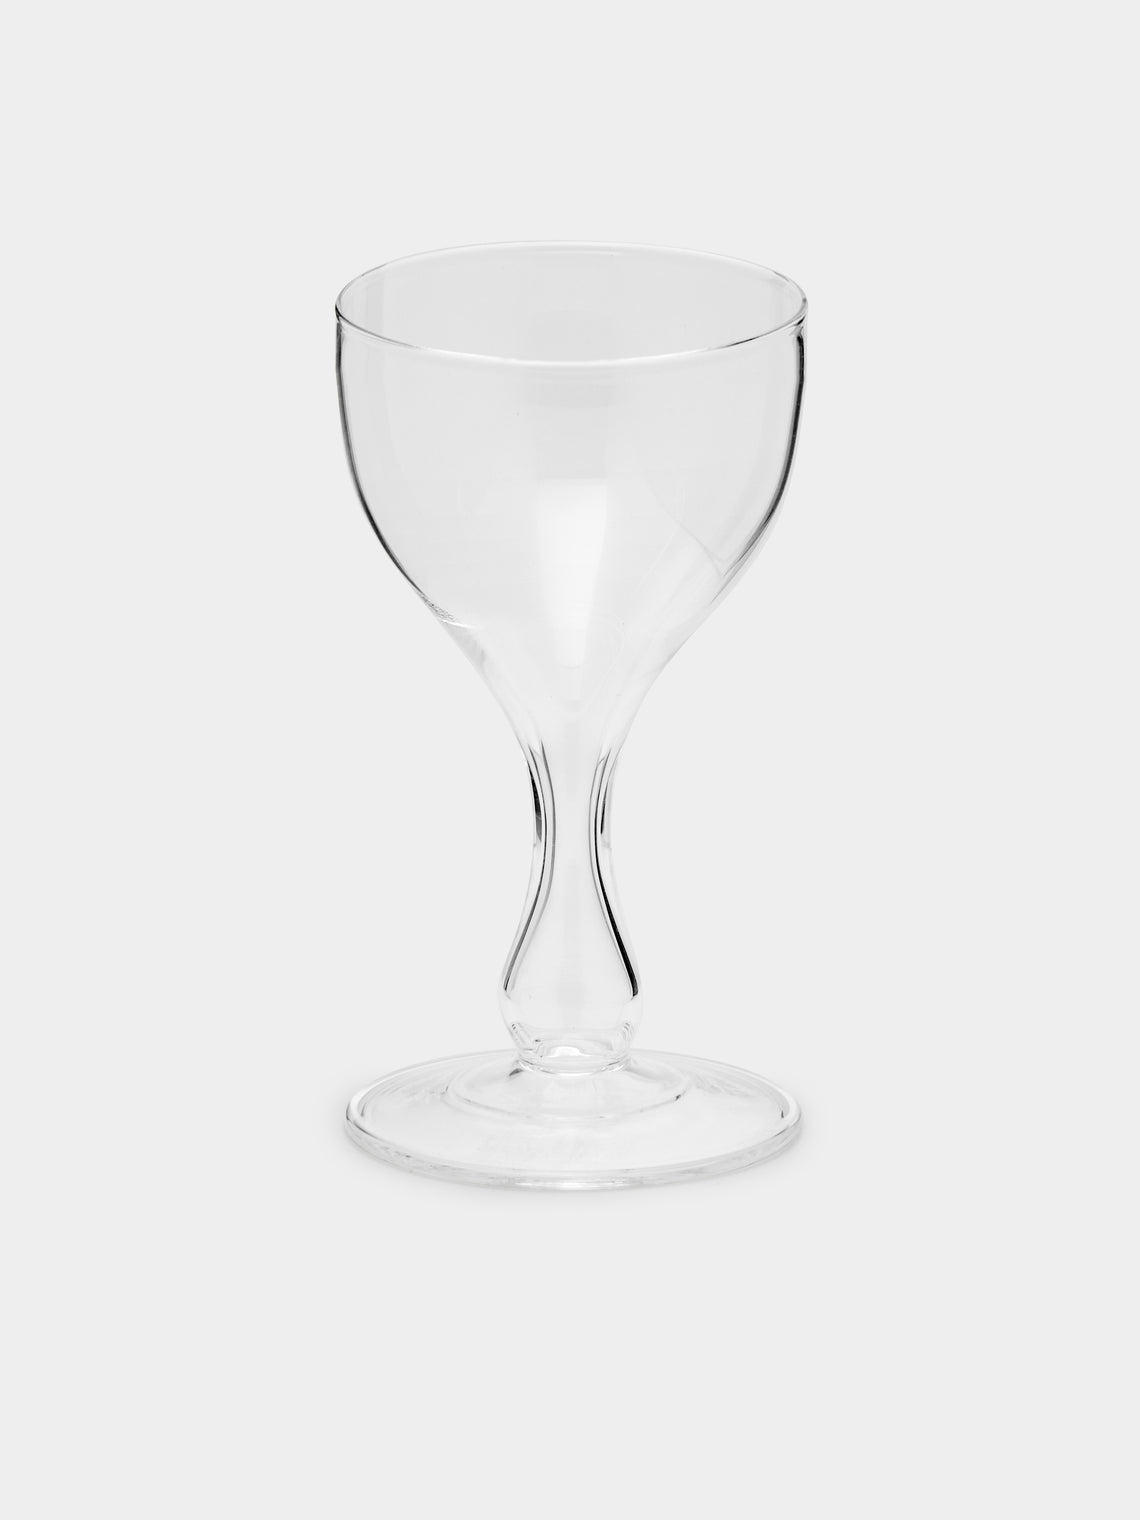 Astier de Villatte - Monique Champagne Glass -  - ABASK - 